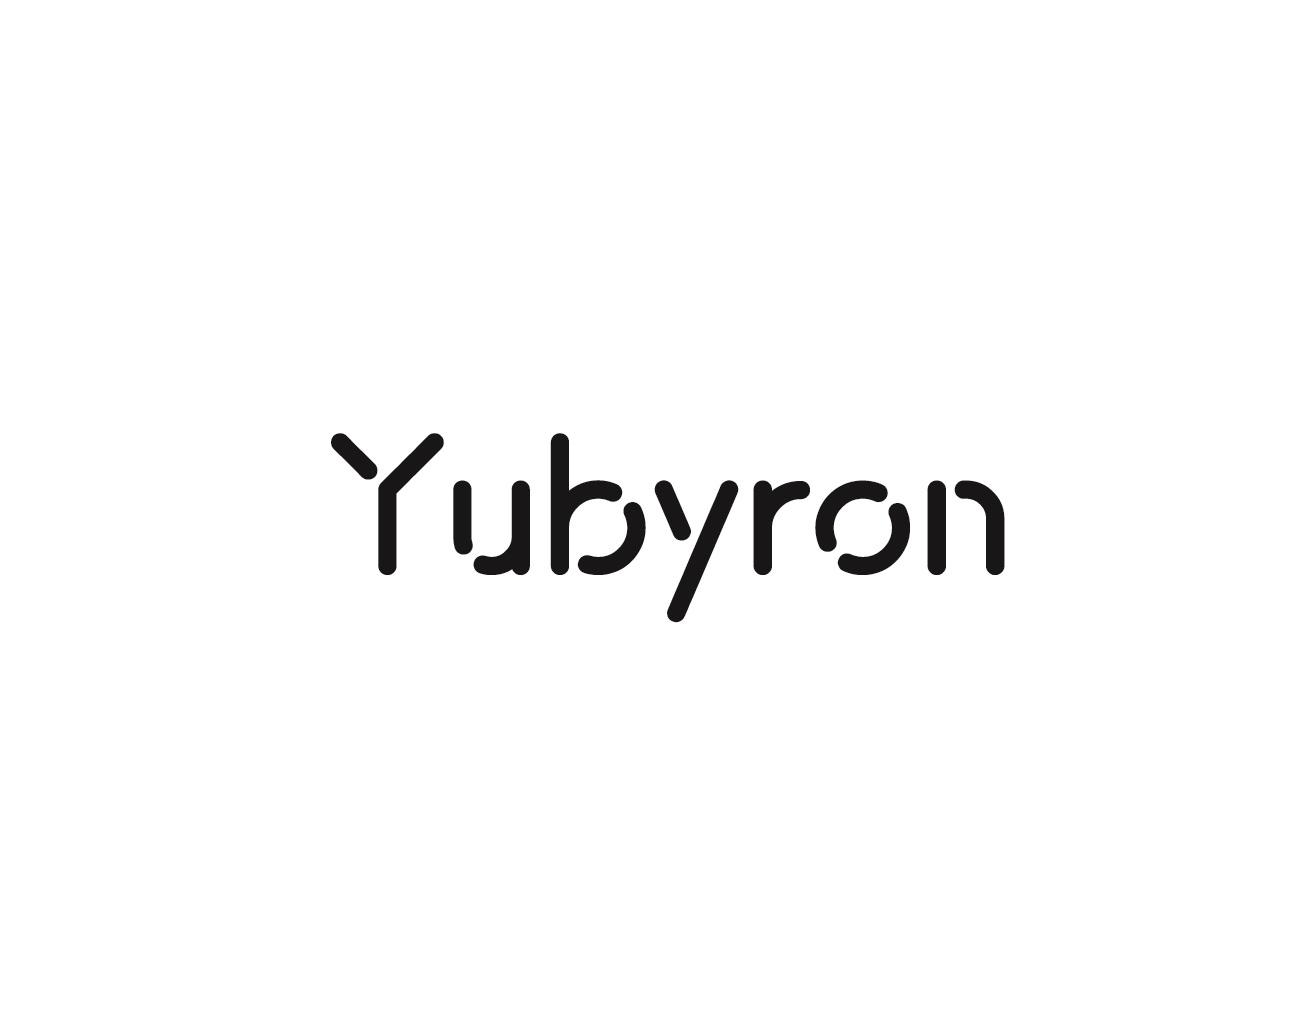 YUBYRON